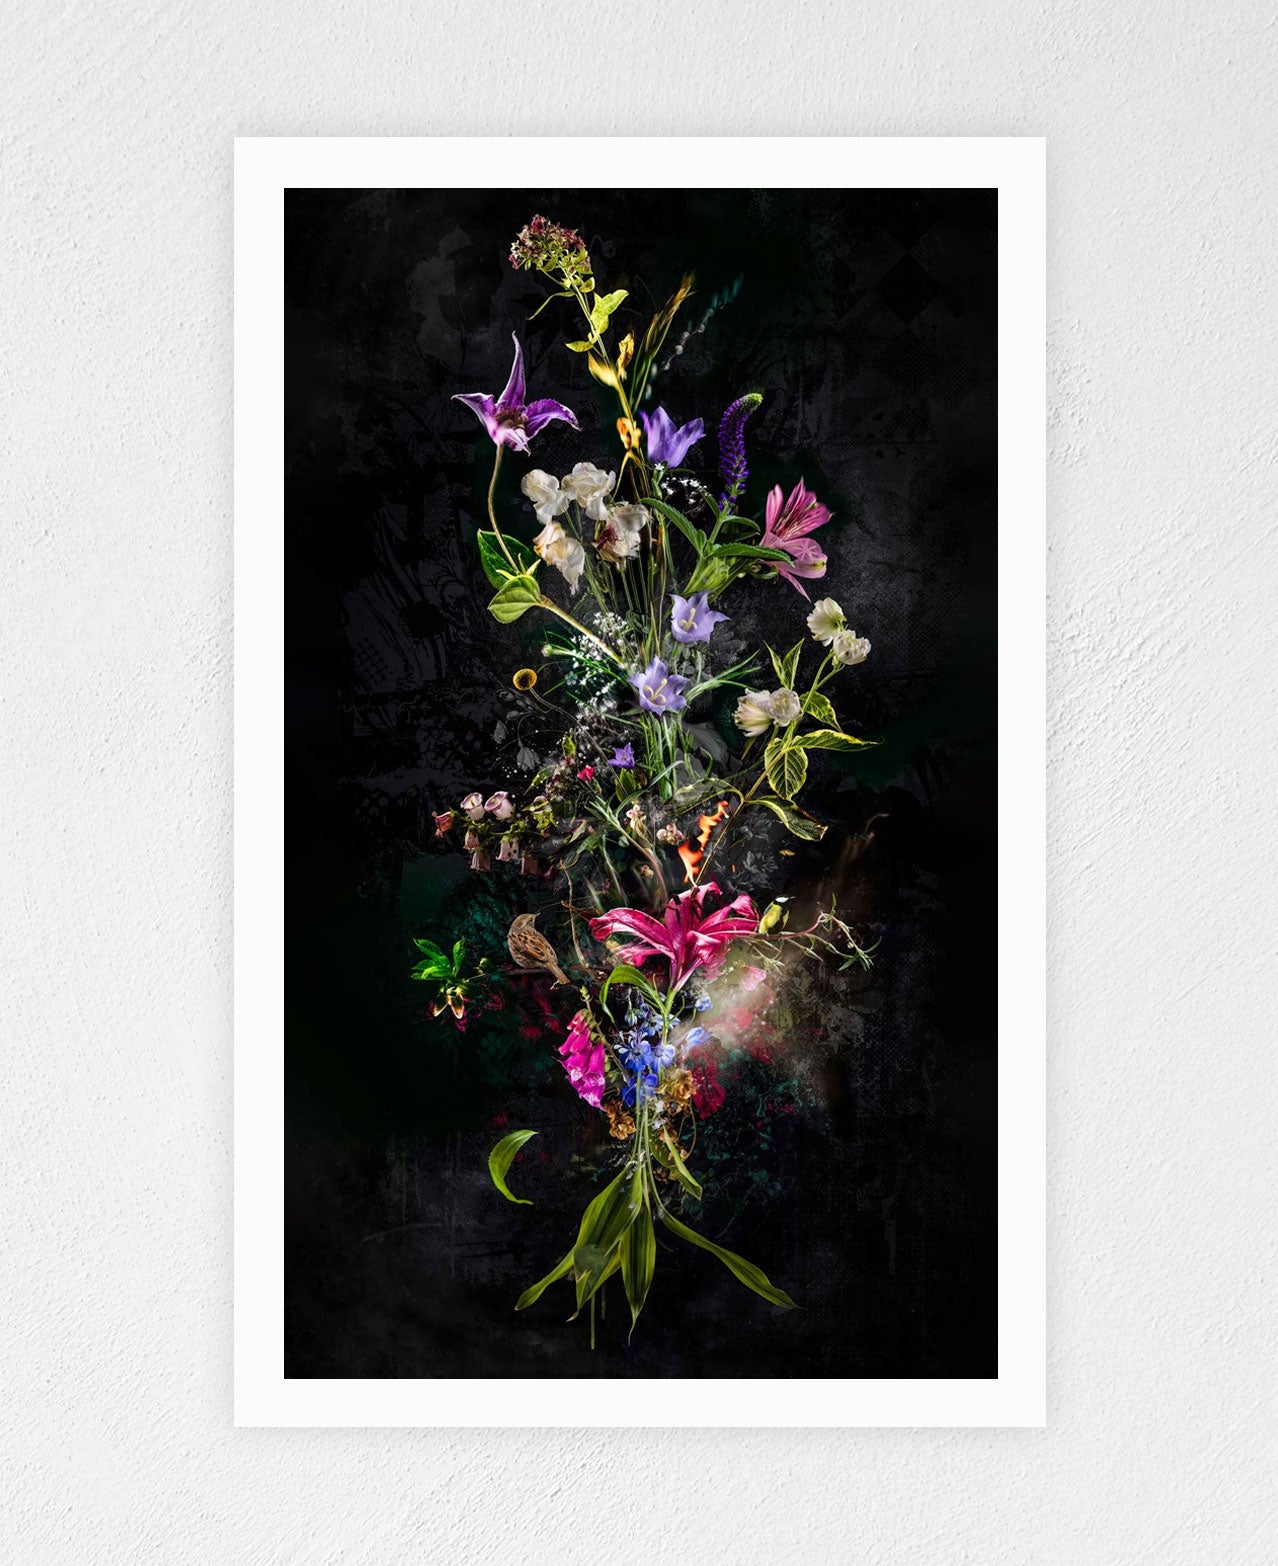 Archival Pigment Print "Bouquet XXXVIII” 9/10